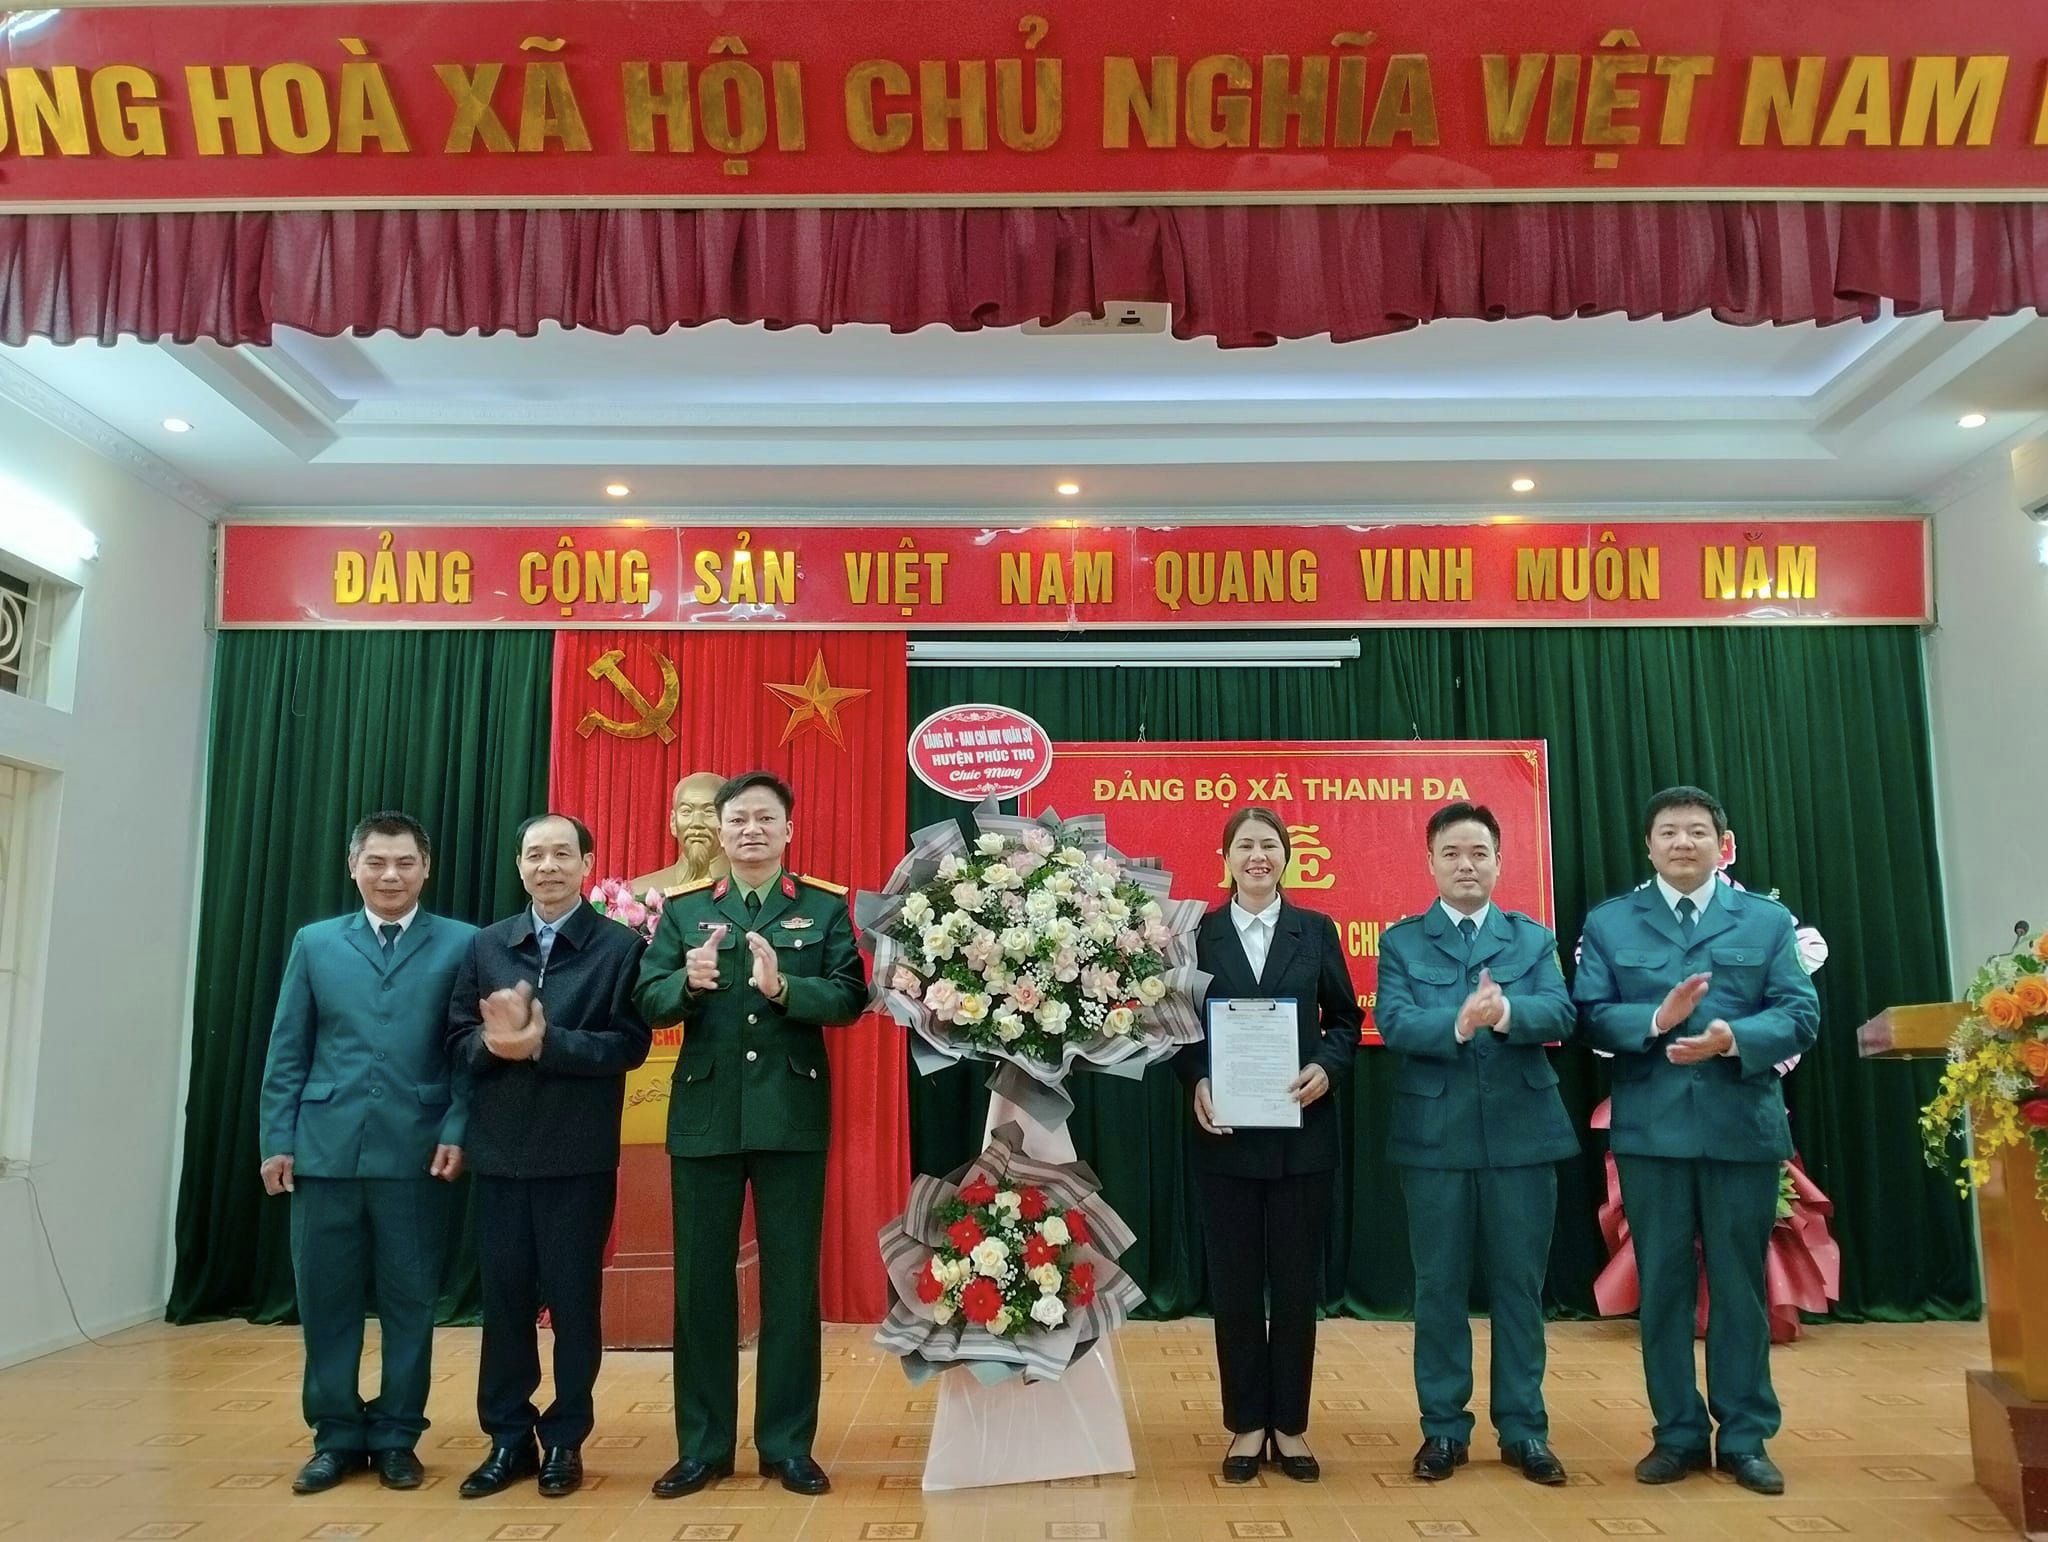 Đảng bộ xã Thanh Đa tổ chức Lễ công bố Quyết định thành lập Chi bộ Quân sự xã